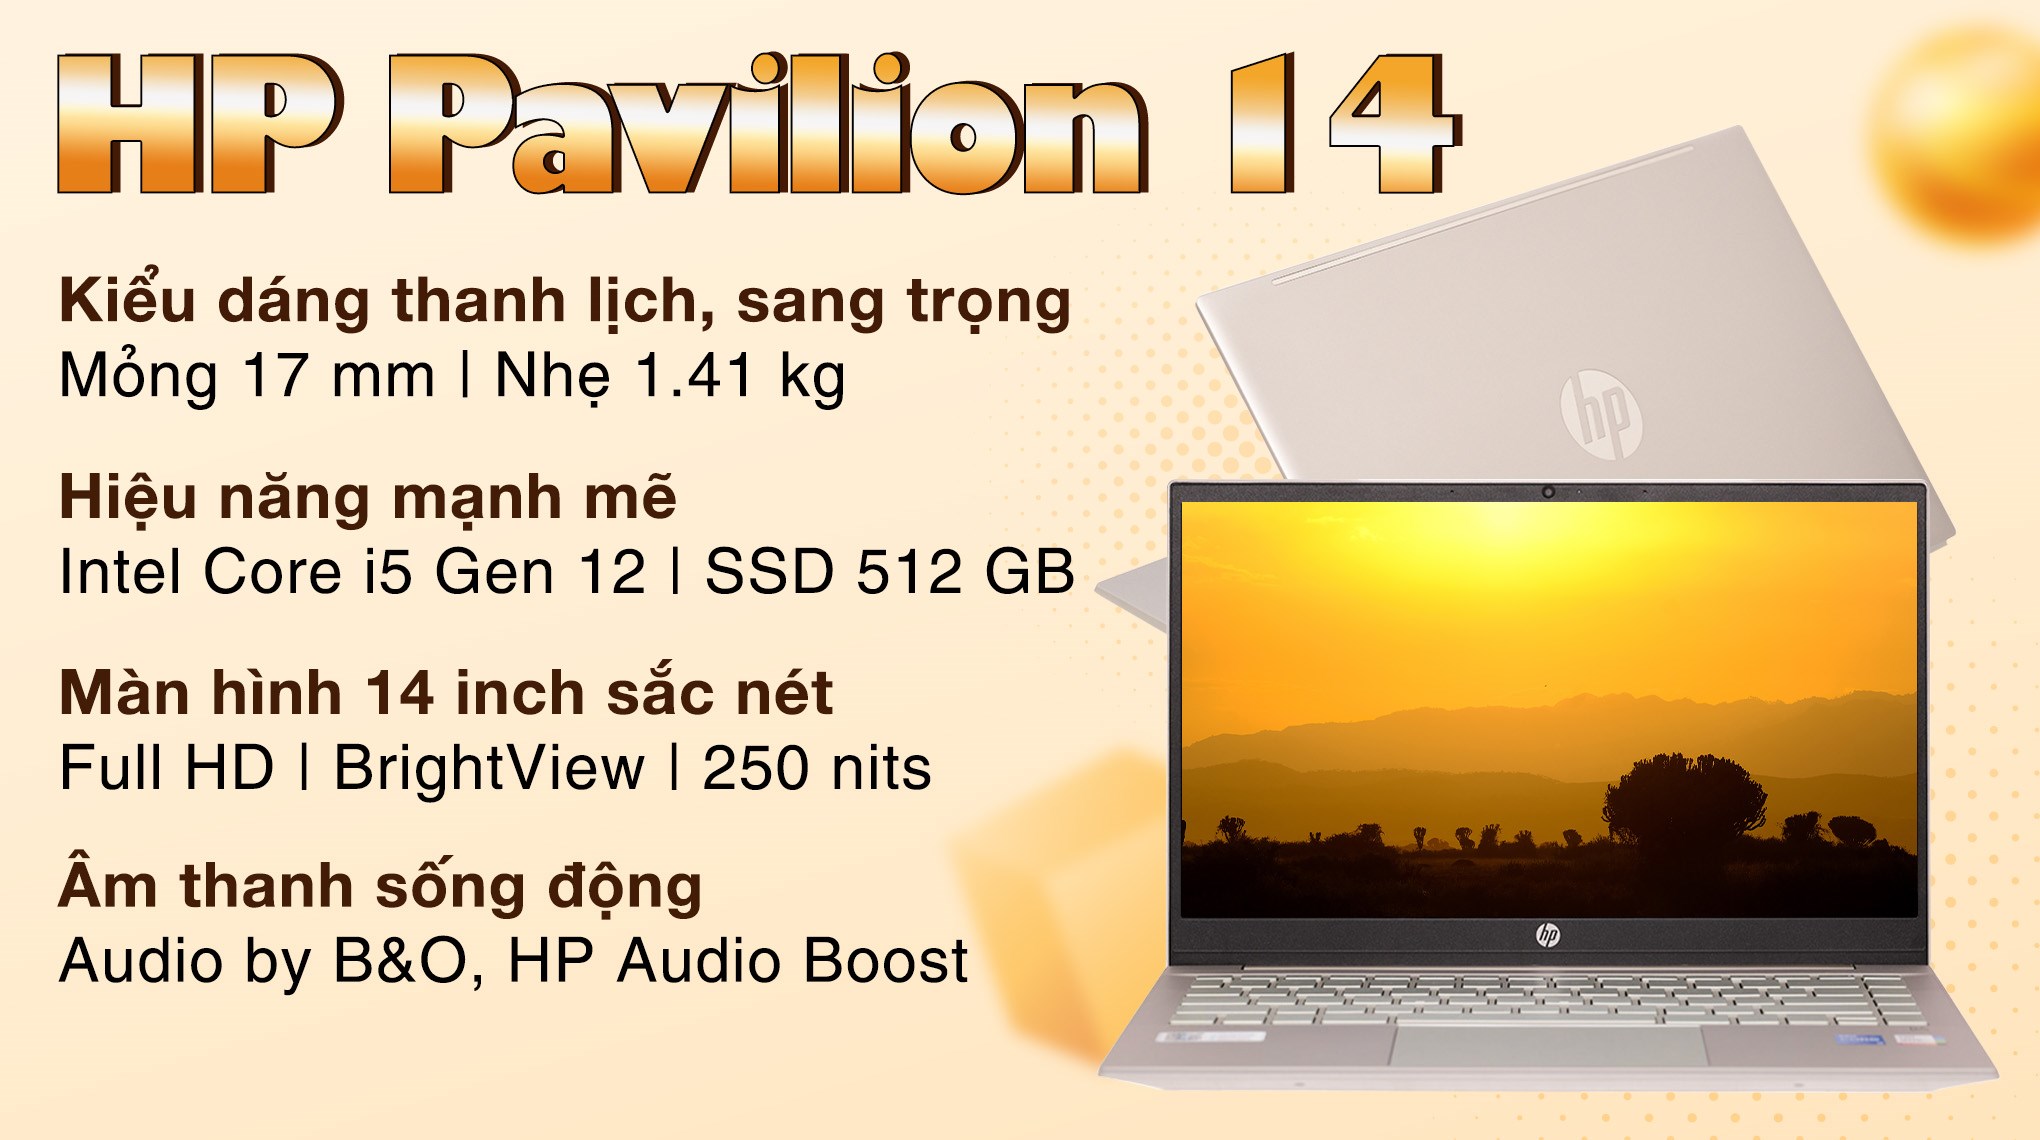 HP Pavilion 14 - laptop: Nếu bạn muốn một chiếc laptop đa năng, khả năng xử lý nhanh và hiệu suất ổn định, HP Pavilion 14 sẽ là sự lựa chọn hoàn hảo cho bạn. Với thiết kế mỏng nhẹ, thời lượng pin lâu và màn hình Full HD, chiếc laptop này sẽ giúp bạn hoàn thành mọi công việc một cách dễ dàng và hiệu quả.